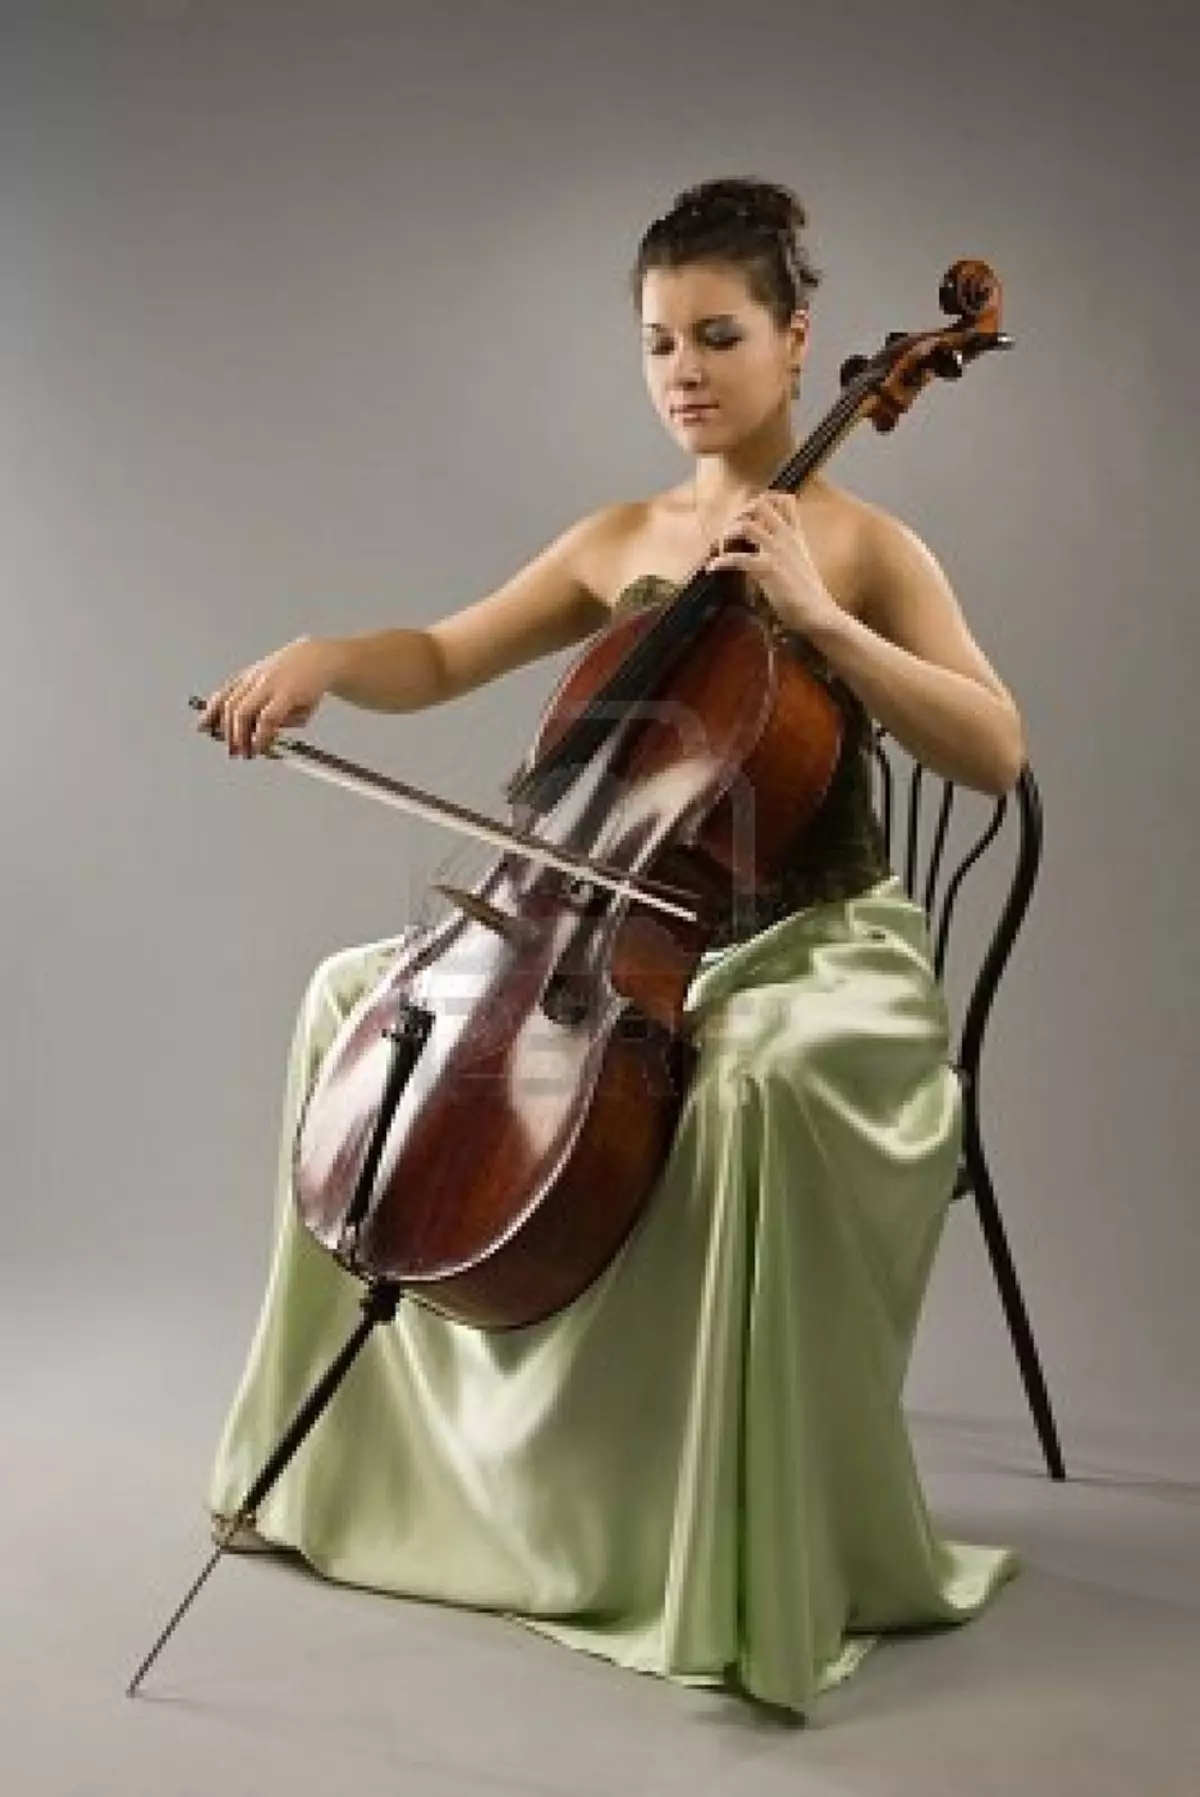 Cello hra: Jak se naučit hrát? Obtížné učení? Jak udržet violoncello? Třídy pro začátečníky od nuly 23565_3